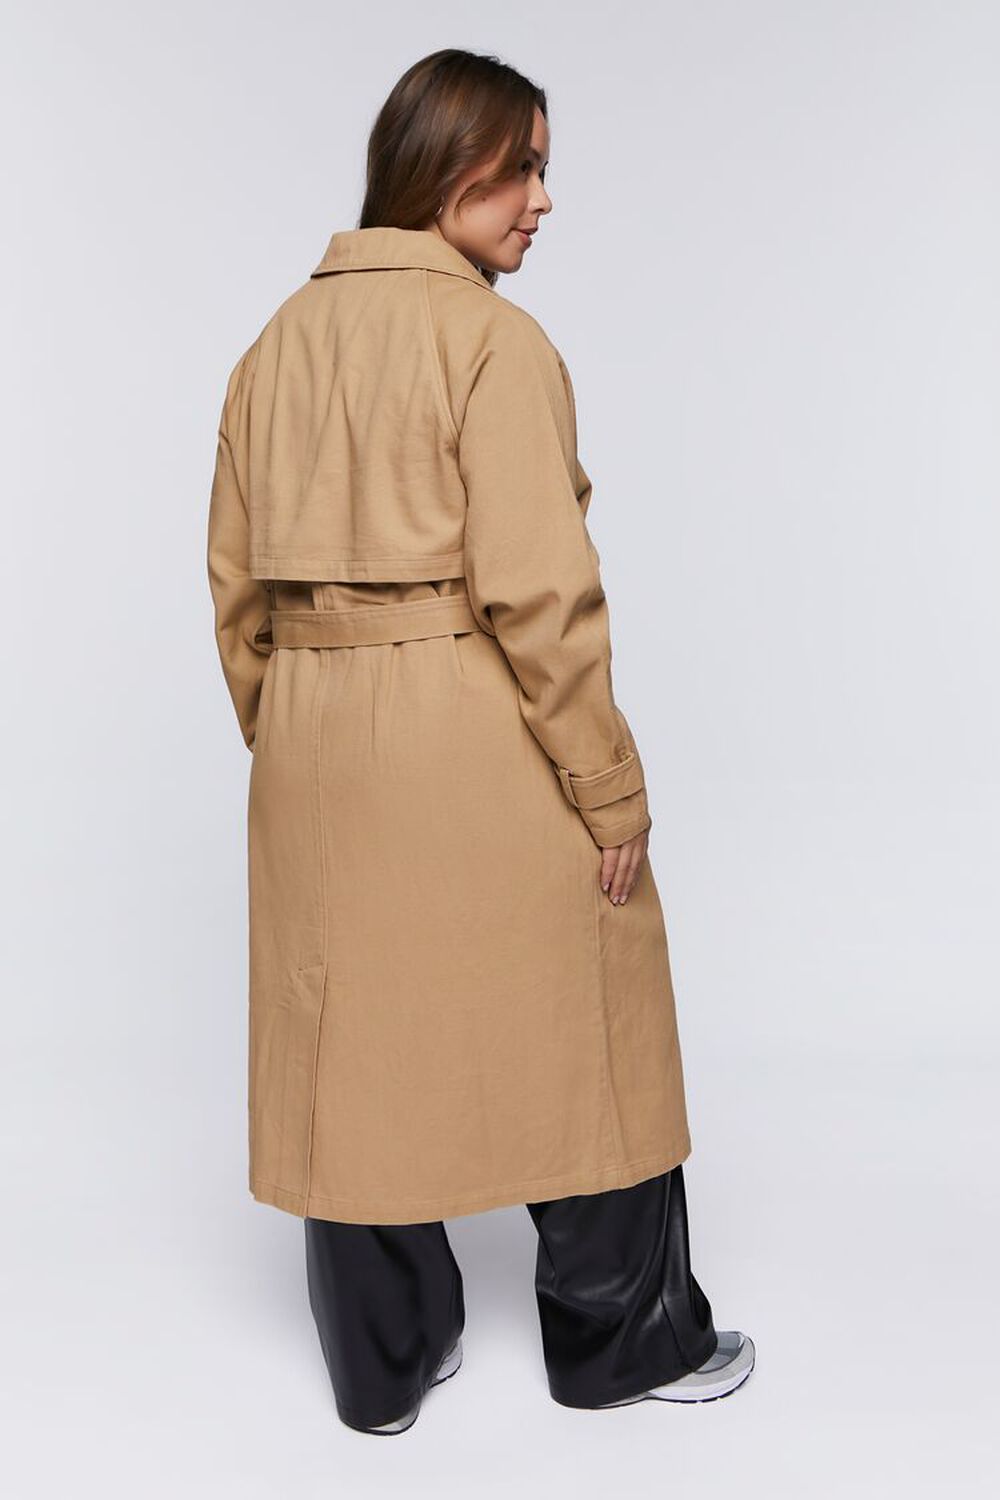 KHAKI Plus Size Twill Trench Coat, image 3